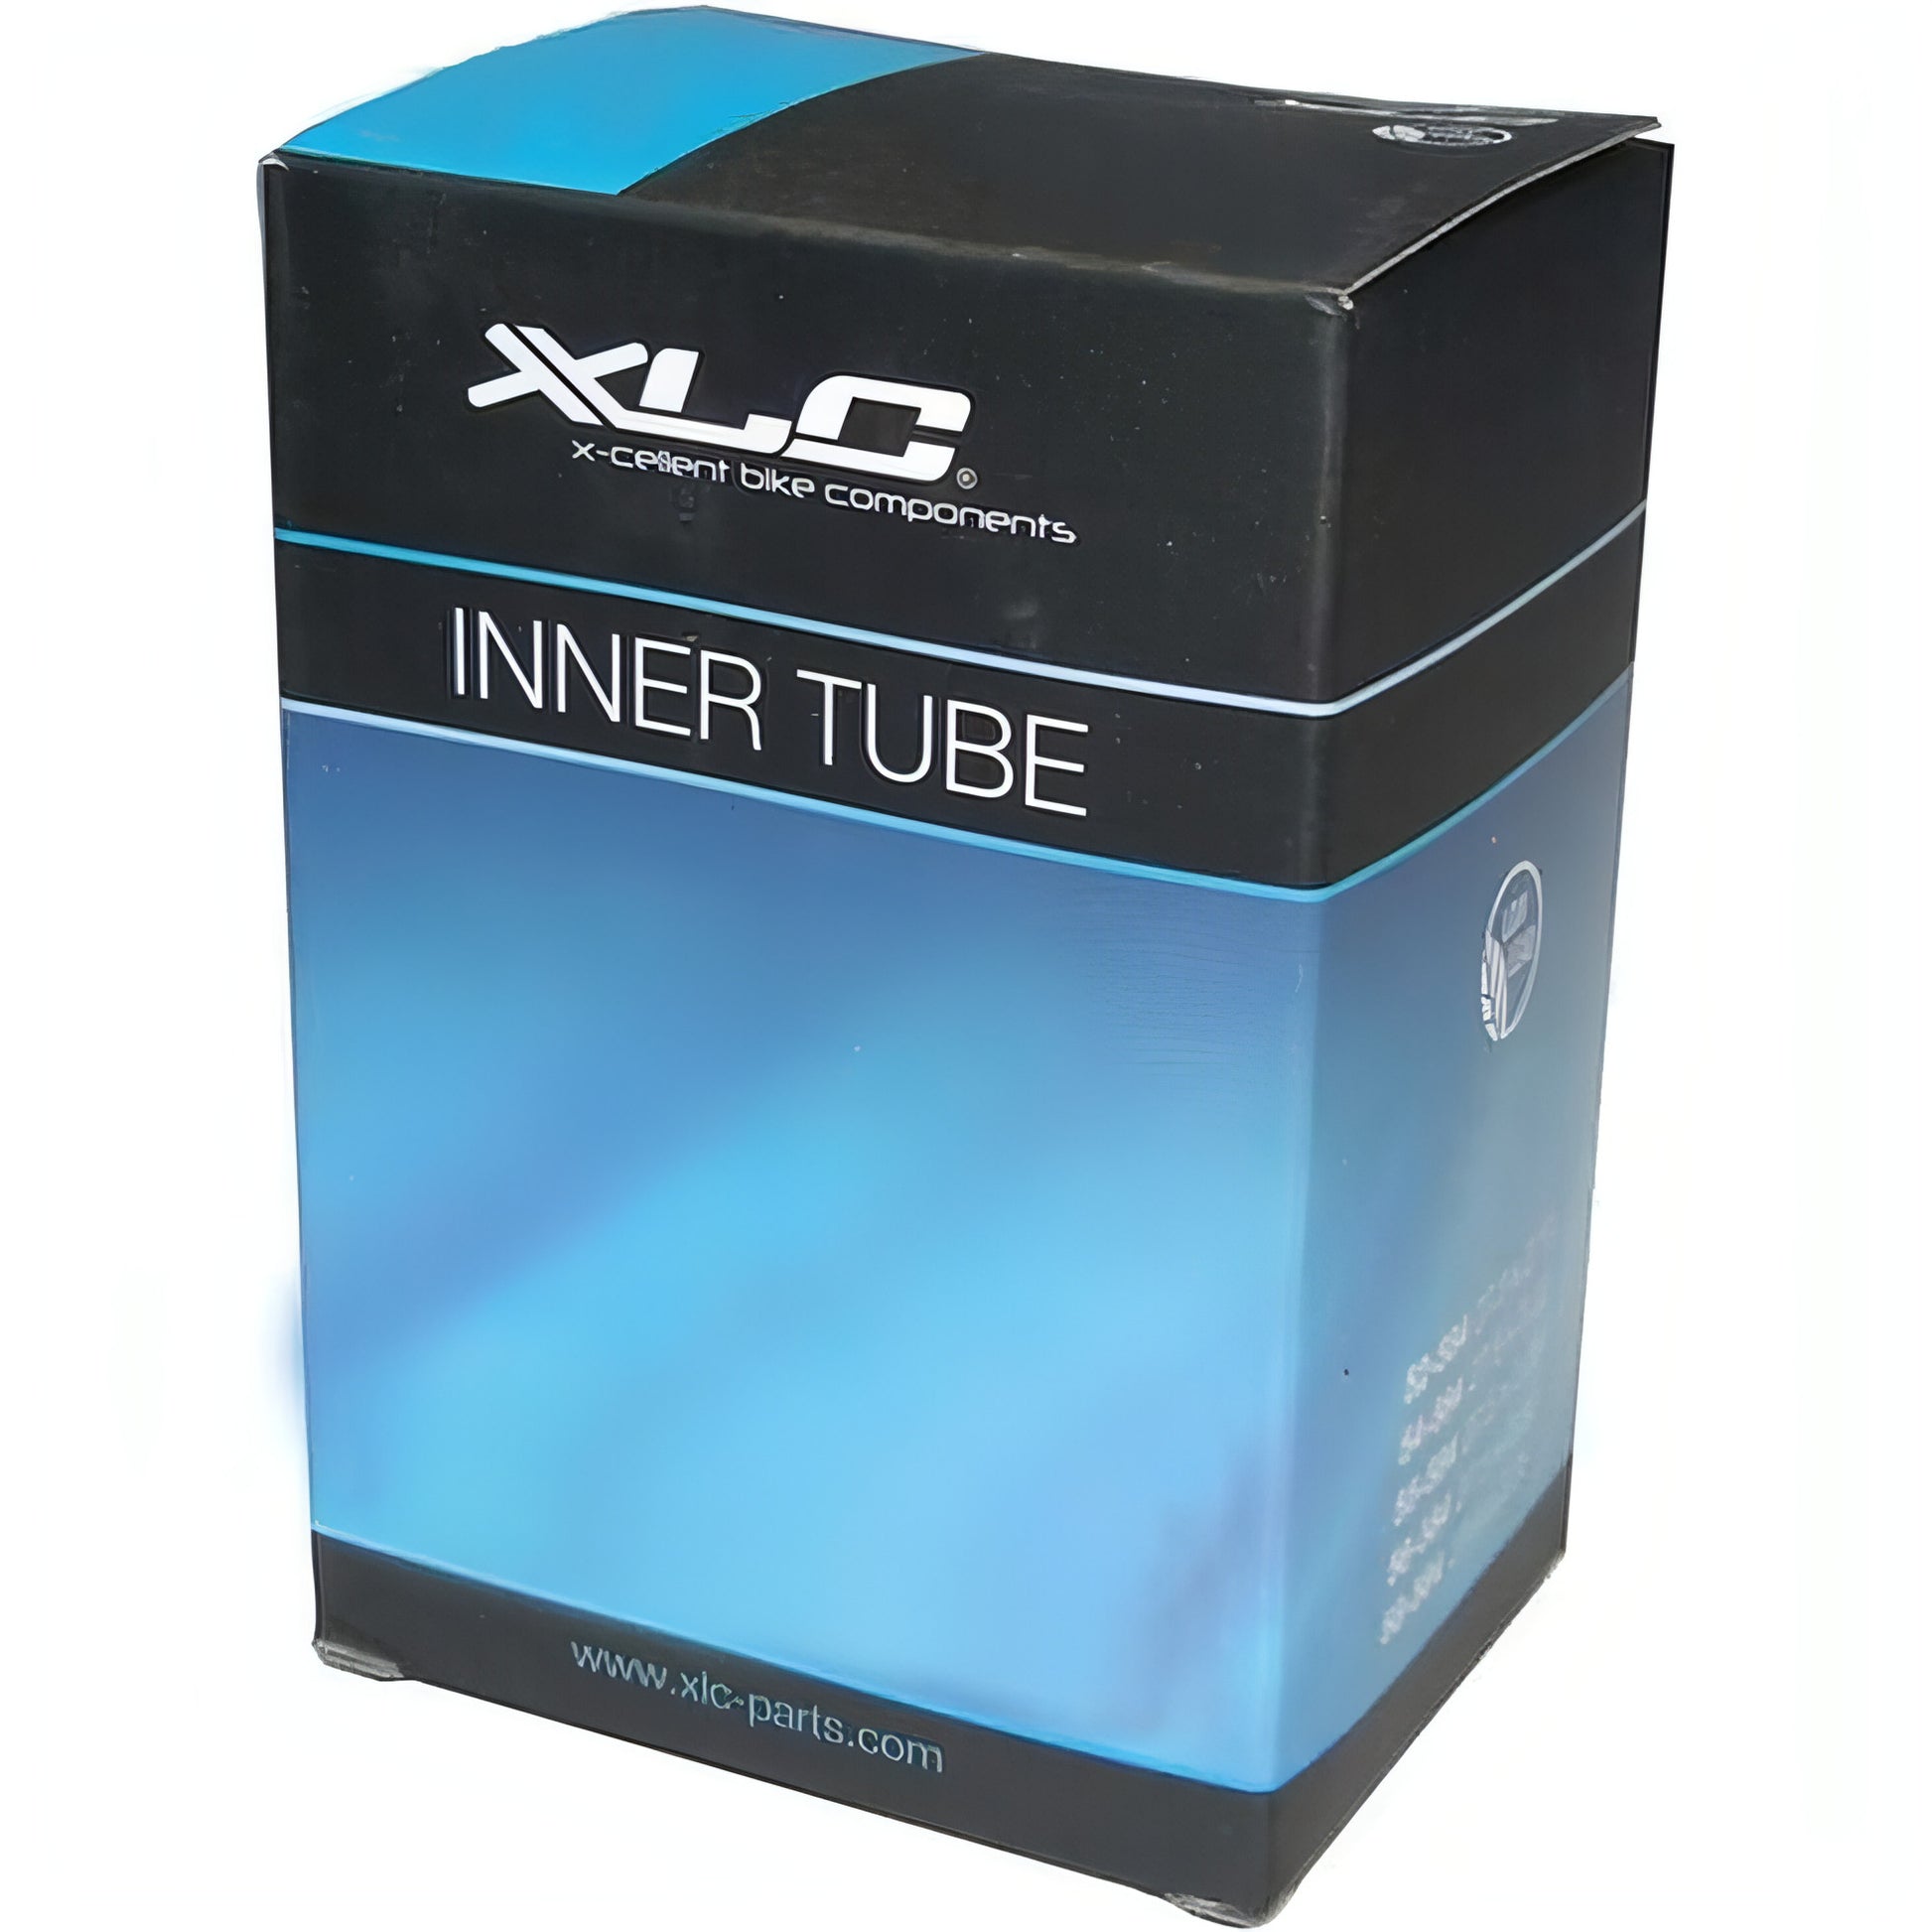 Xlc Inner Tube